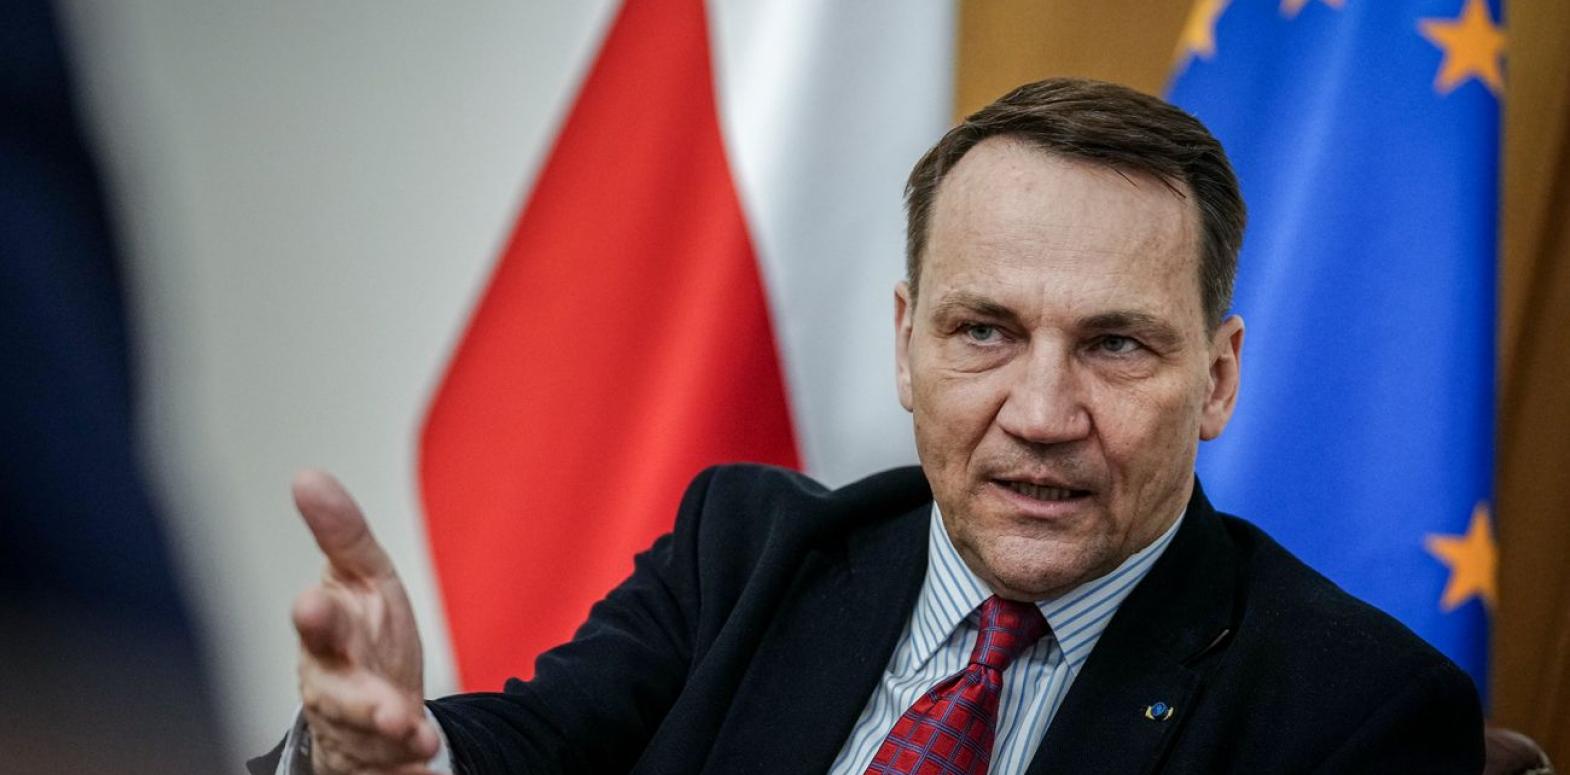 Глава МИД Польши рассказал, чего Украина может ожидать от саммита НАТО